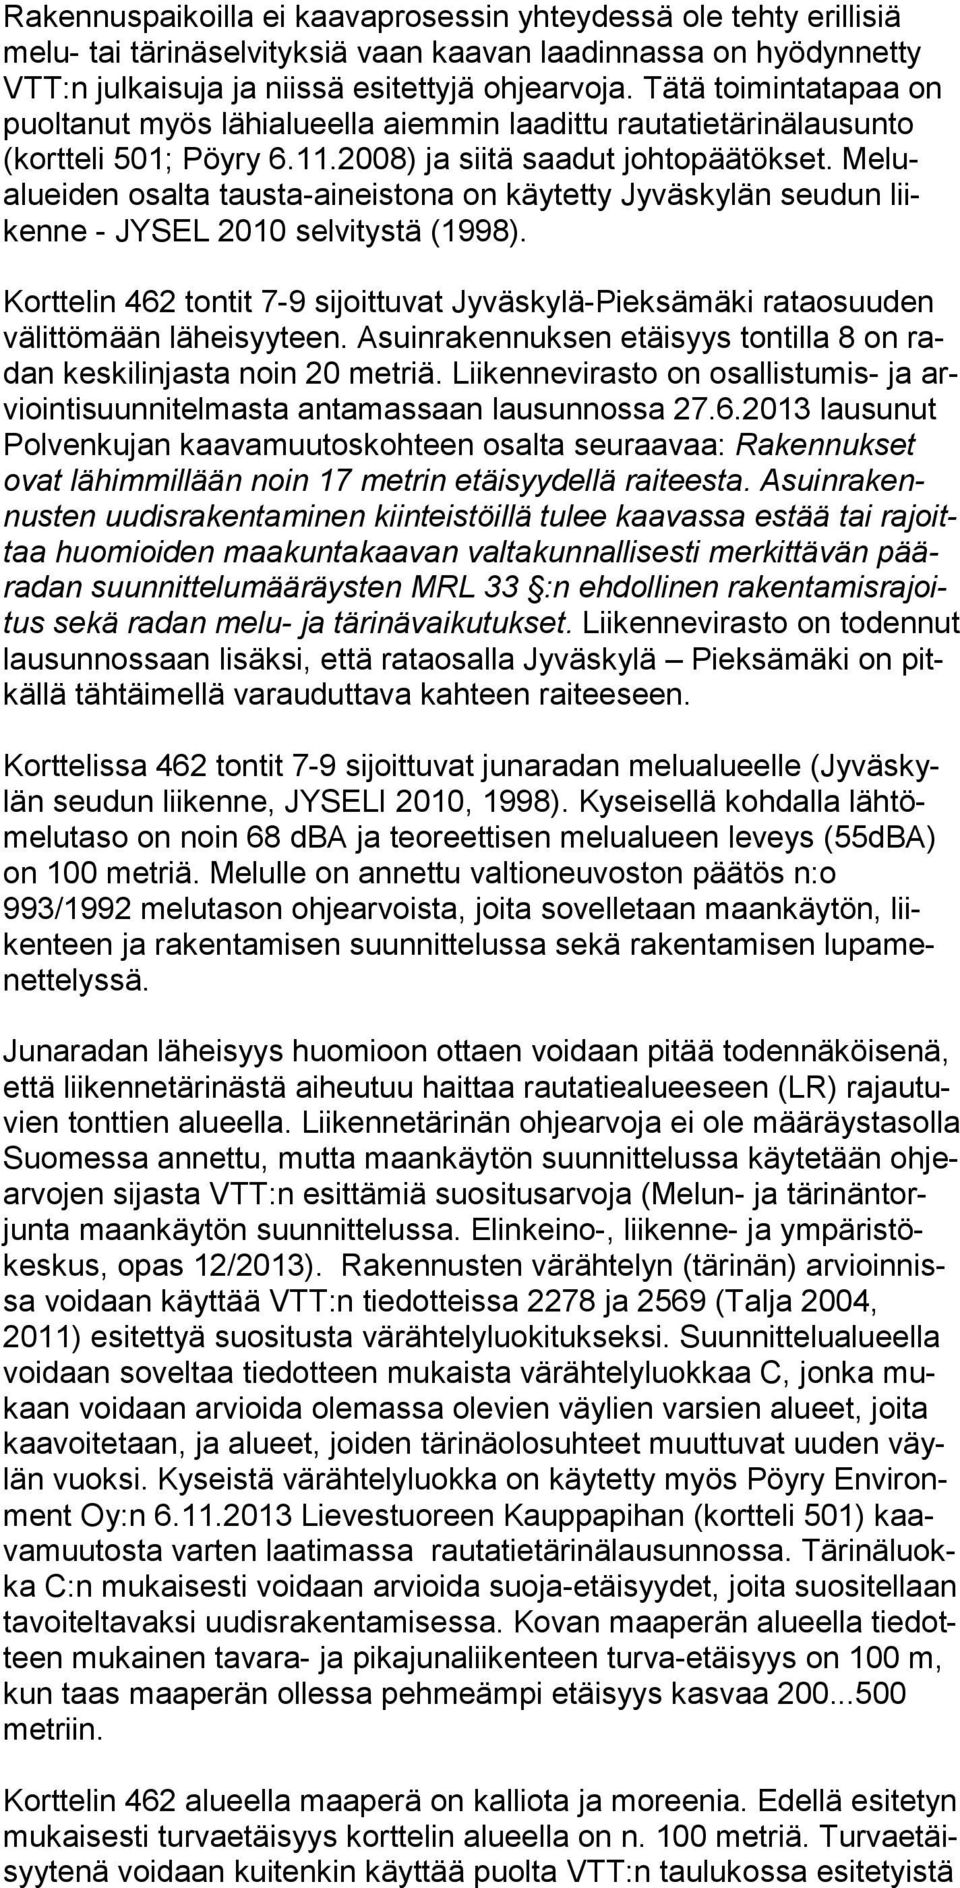 Me lualuei den osal ta tausta-aineistona on käytetty Jy väs ky län seudun liiken ne - JY SEL 2010 selvitystä (1998).